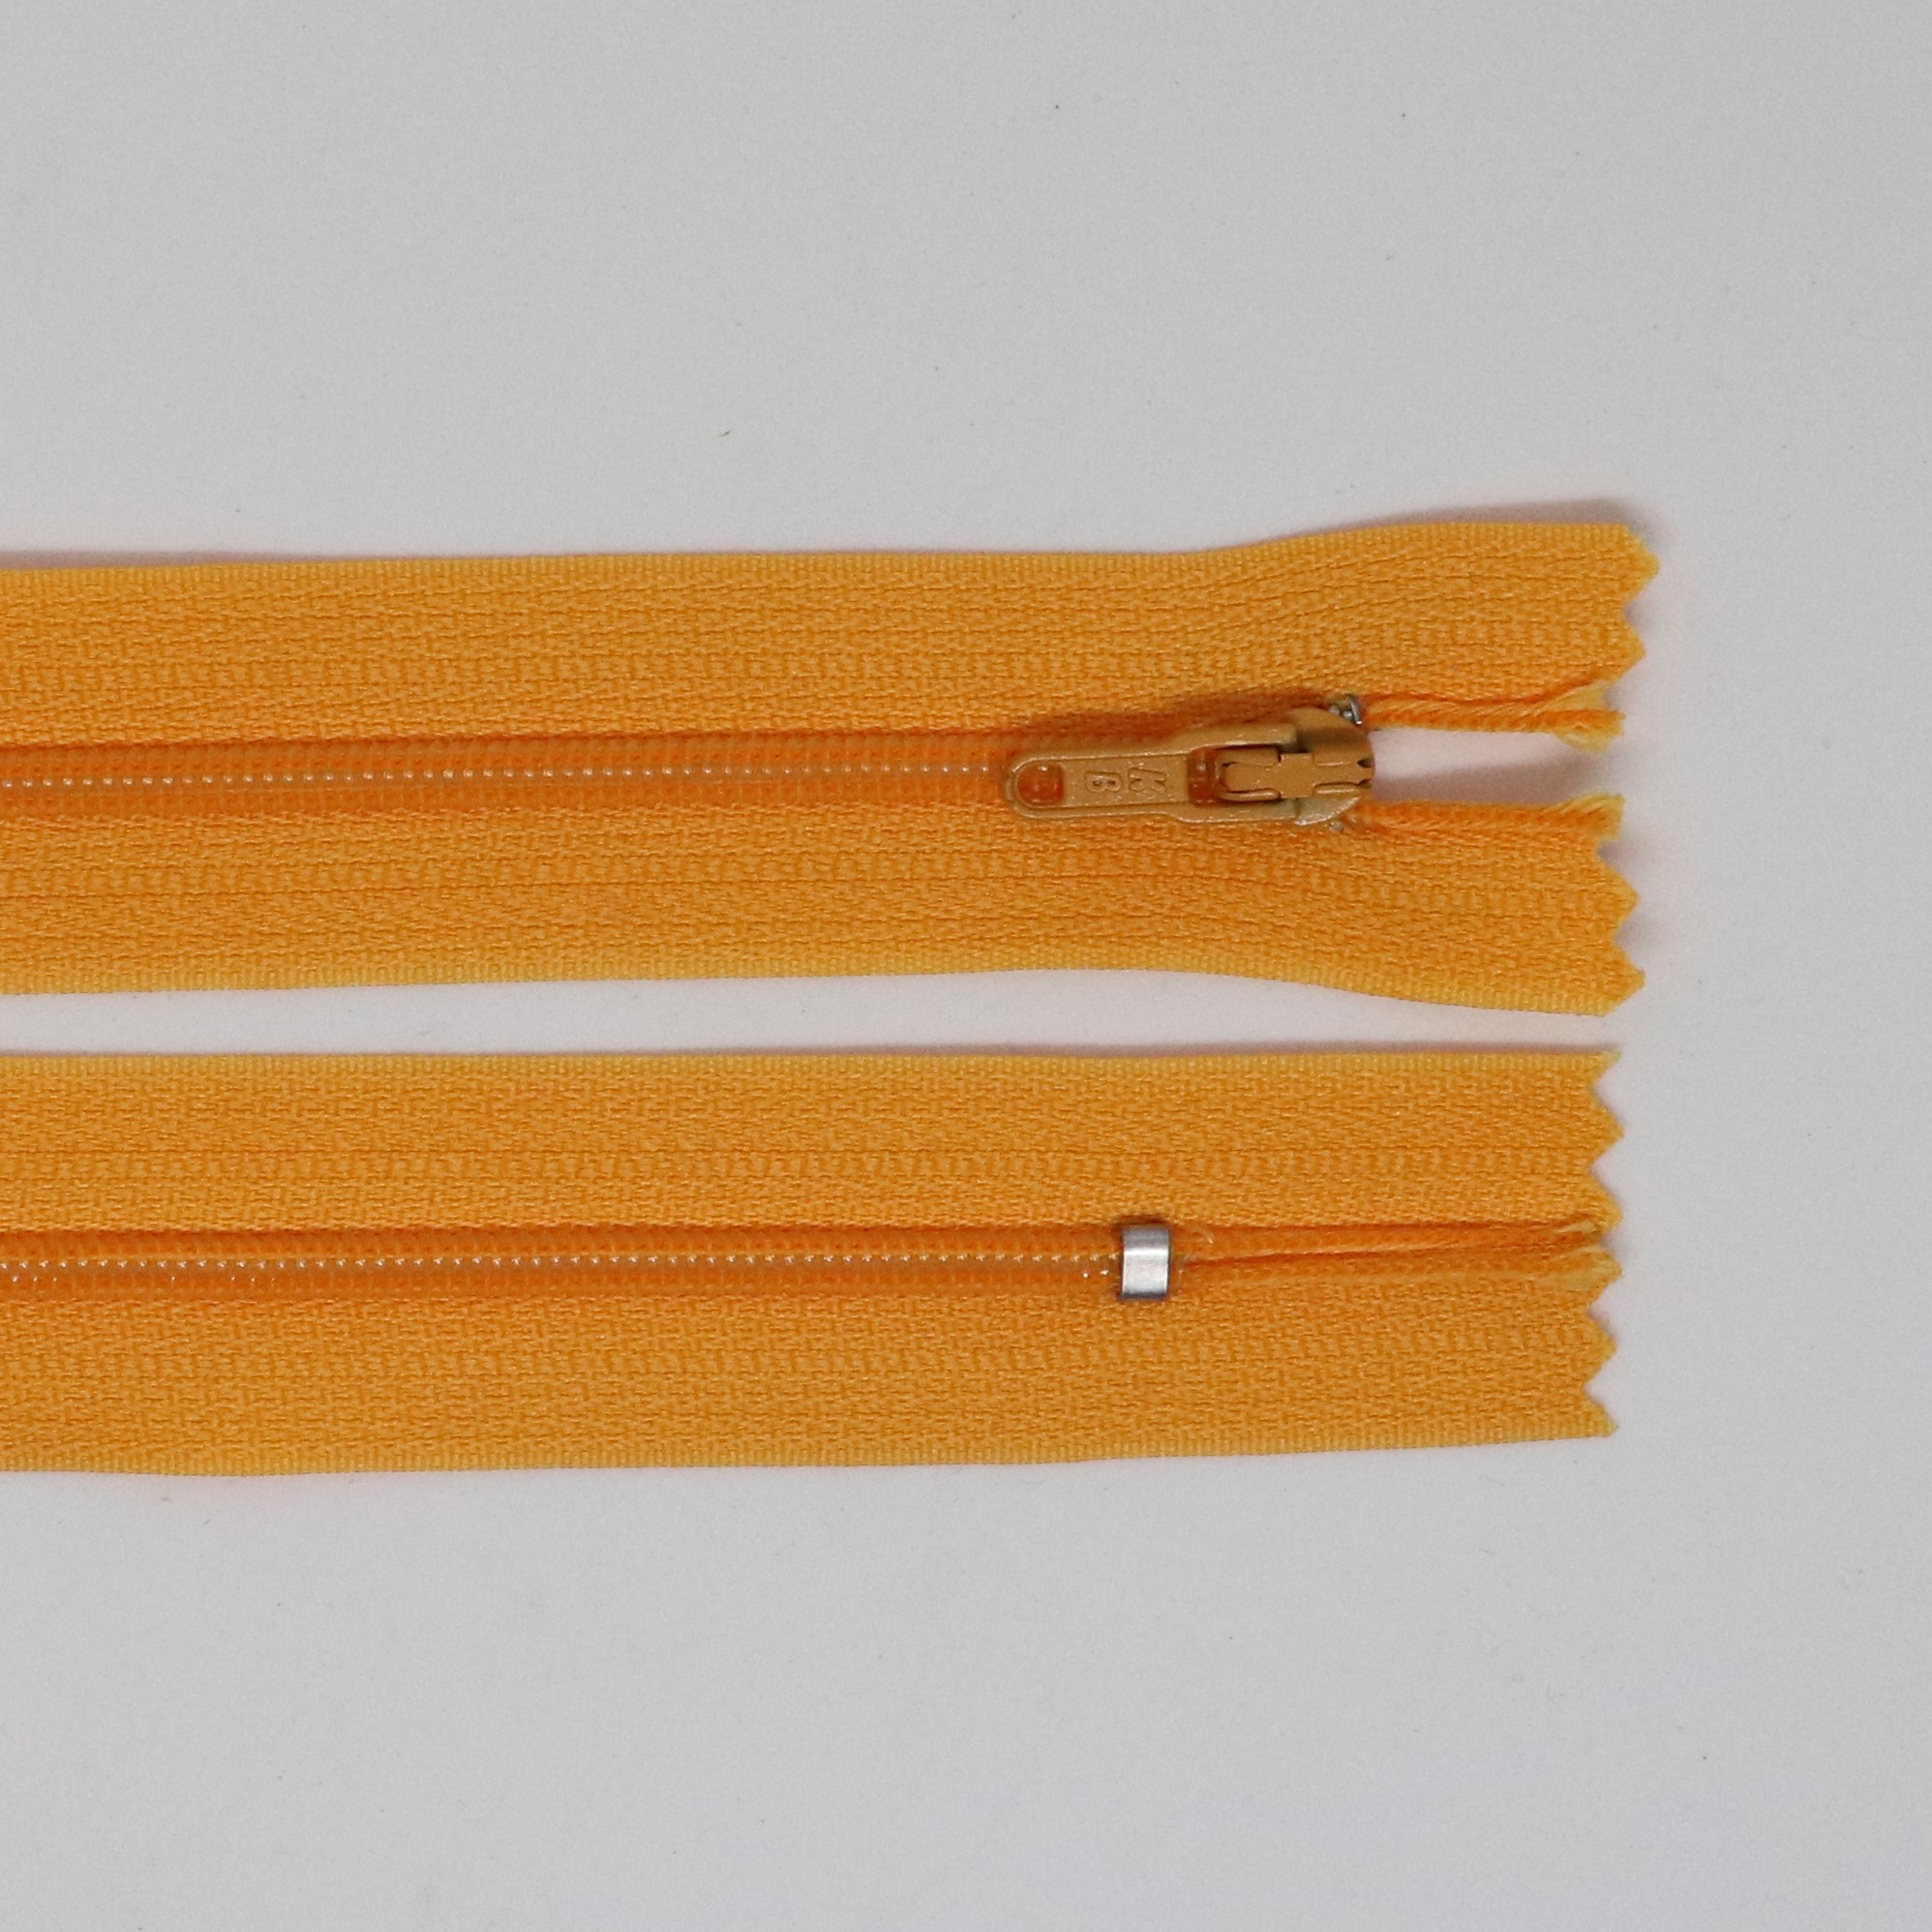 Spirálový zip, šíøe 3 mm, délka 65 cm, oranžová - zvìtšit obrázek